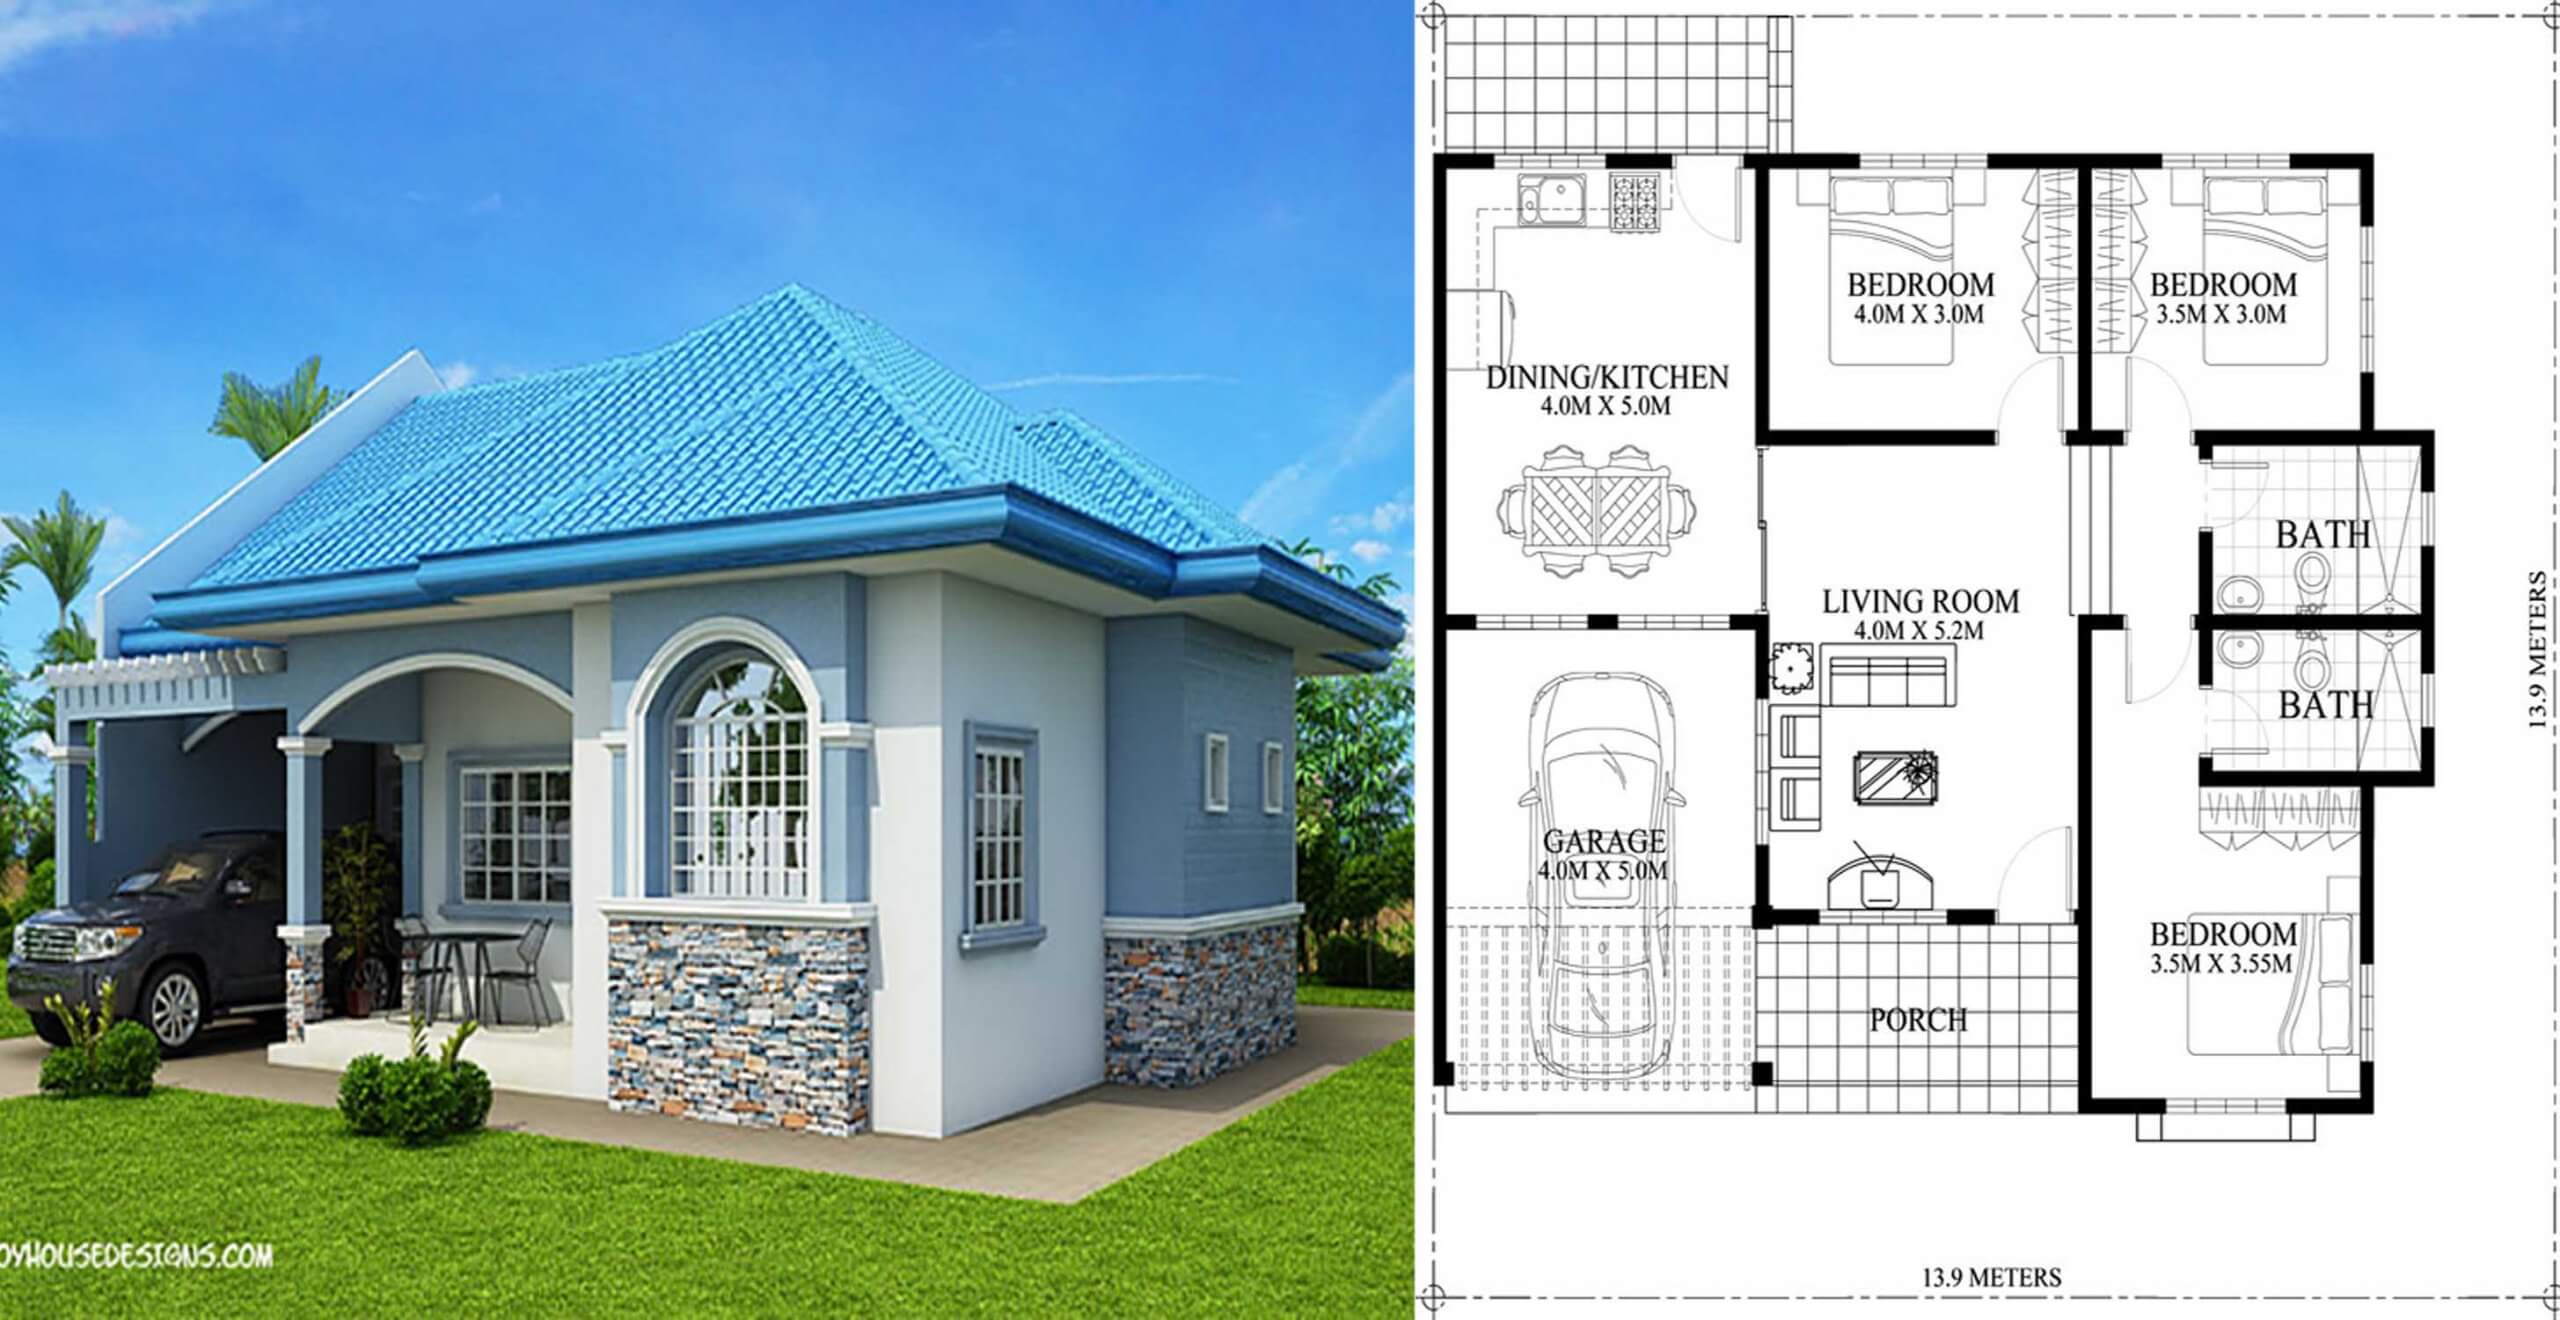 Bedroom Bungalow Floor Plan Philippines Floorplans Click